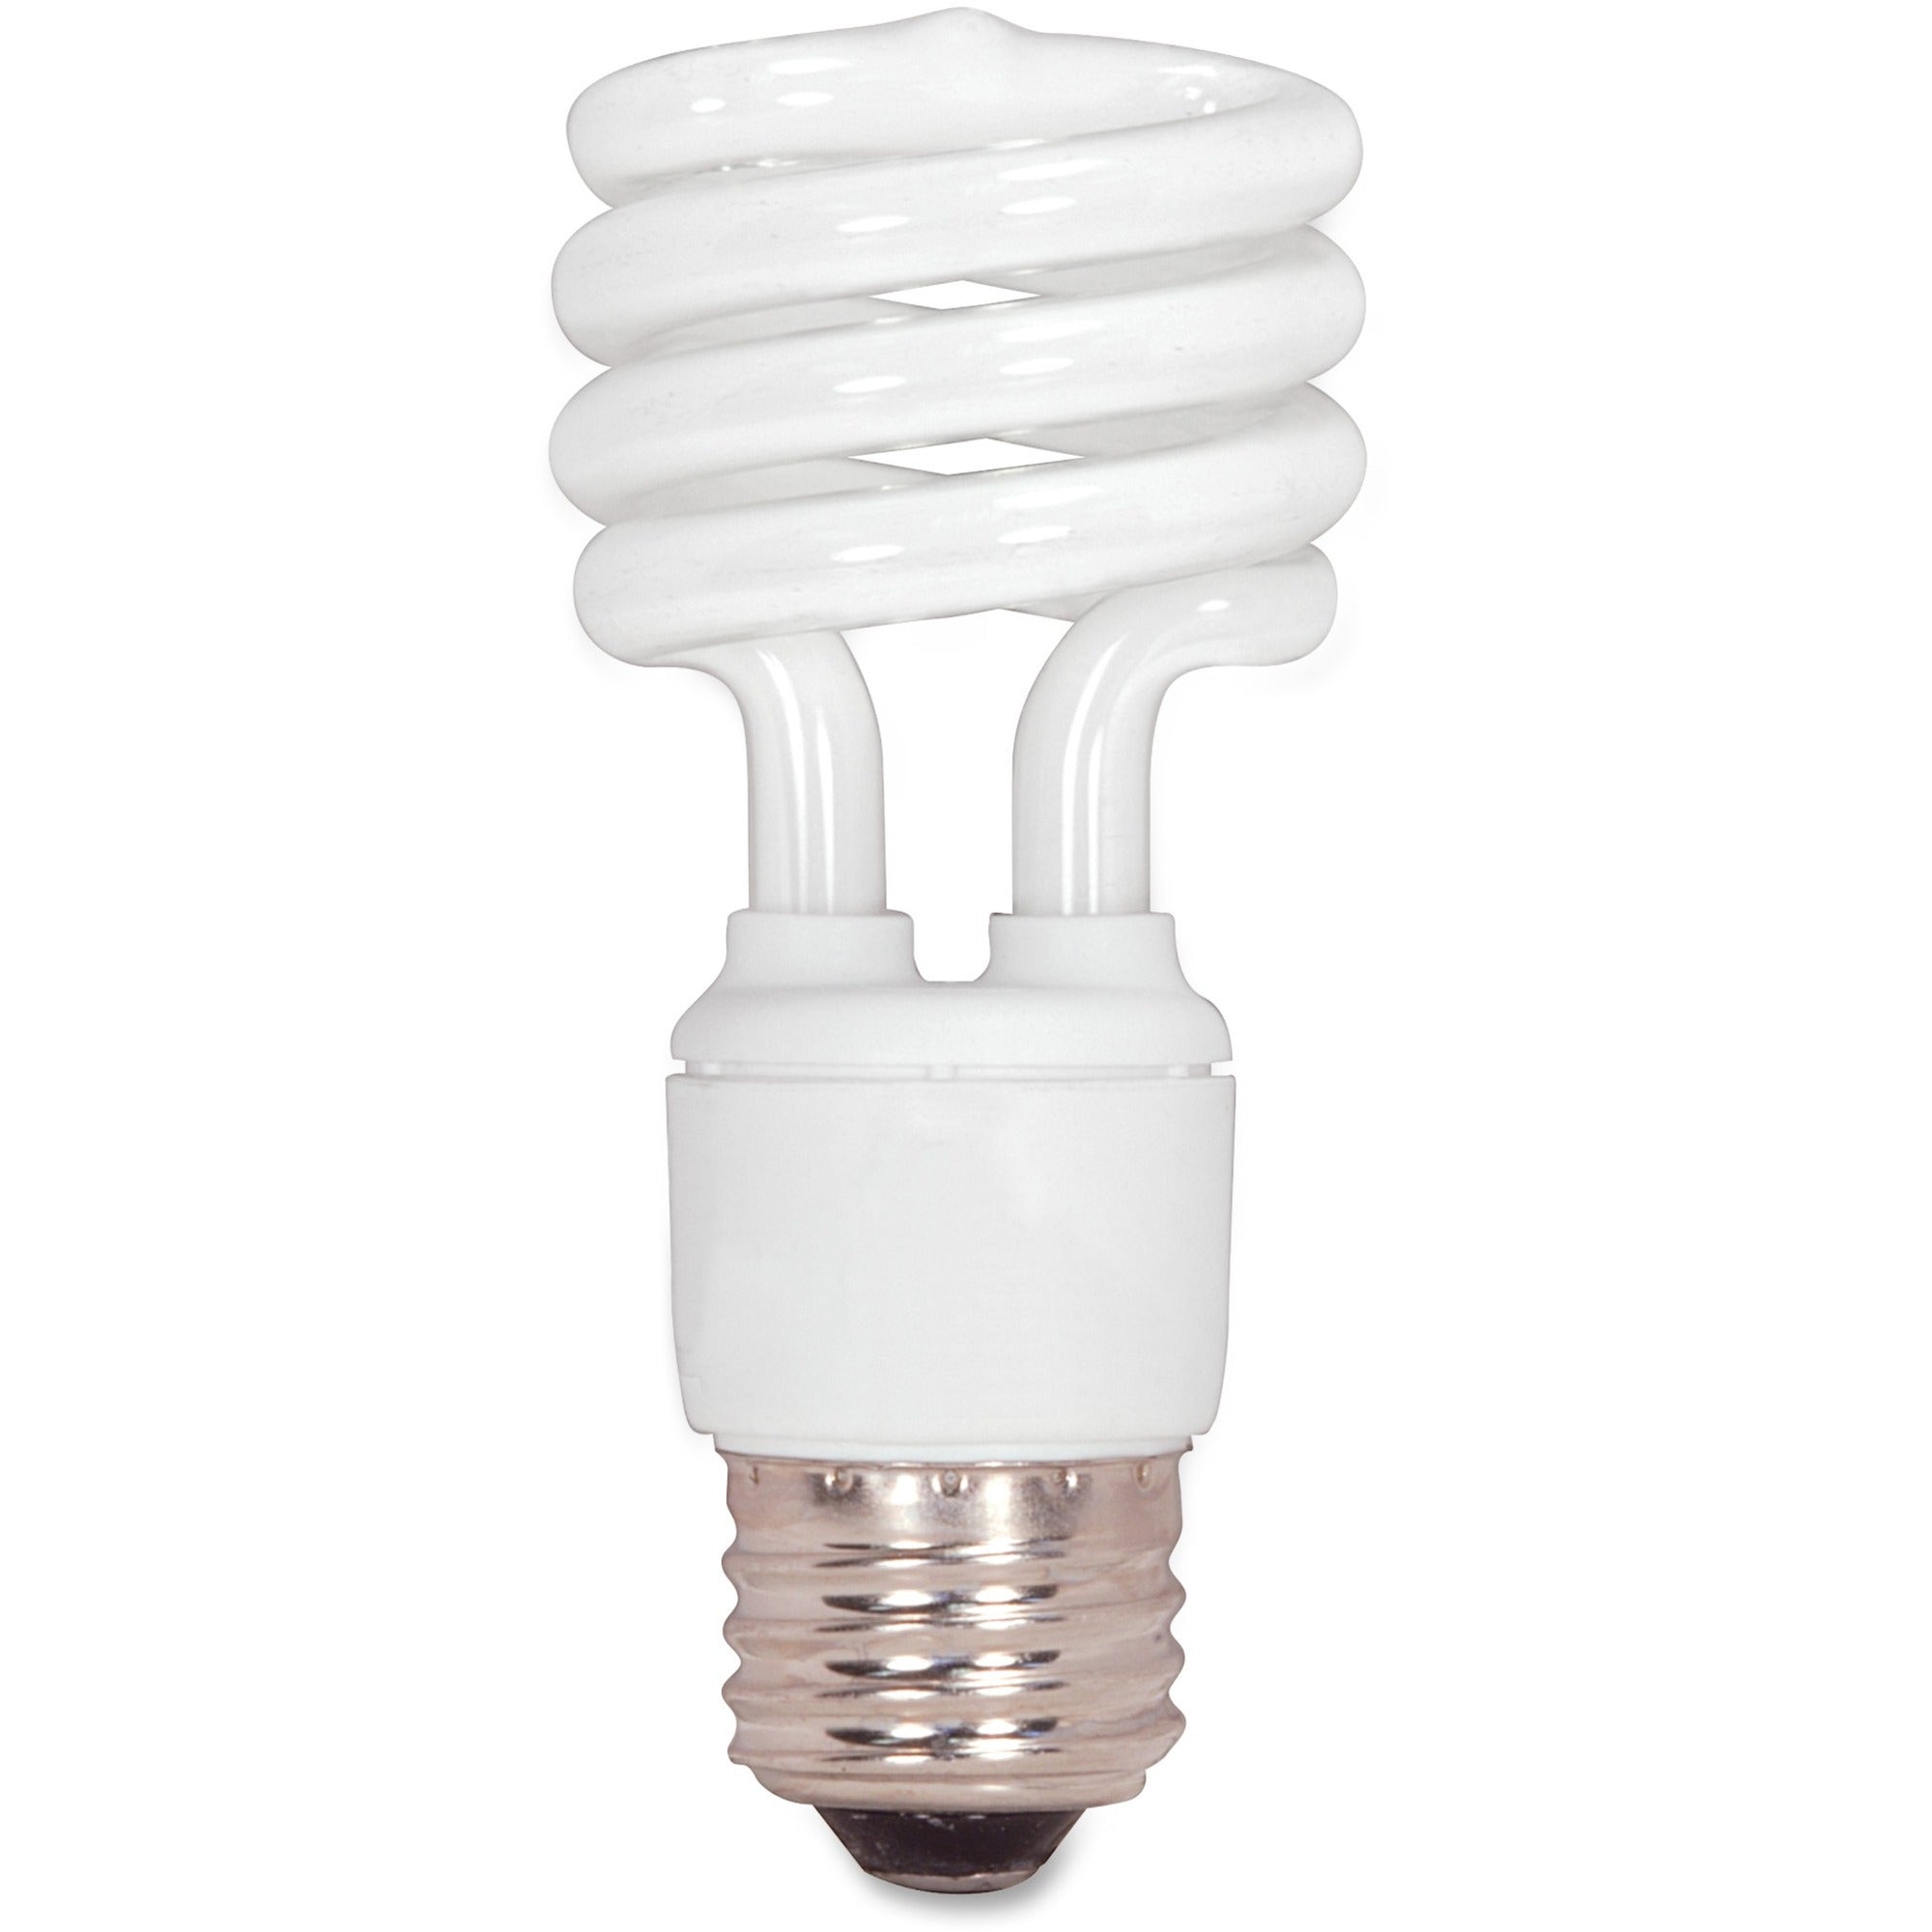 Satco T2 13-watt Mini Spiral CFL Bulb - 13 W - 60 W Incandescent Equivalent Wattage - 120 V AC - 900 lm - Spiral - T2 Size - Cool White Light Color - E26 Base - 12000 Hour - 6920.3degF (3826.8degC) Color Temperature - 82 CRI - Energy Saver - 1 Ea - 